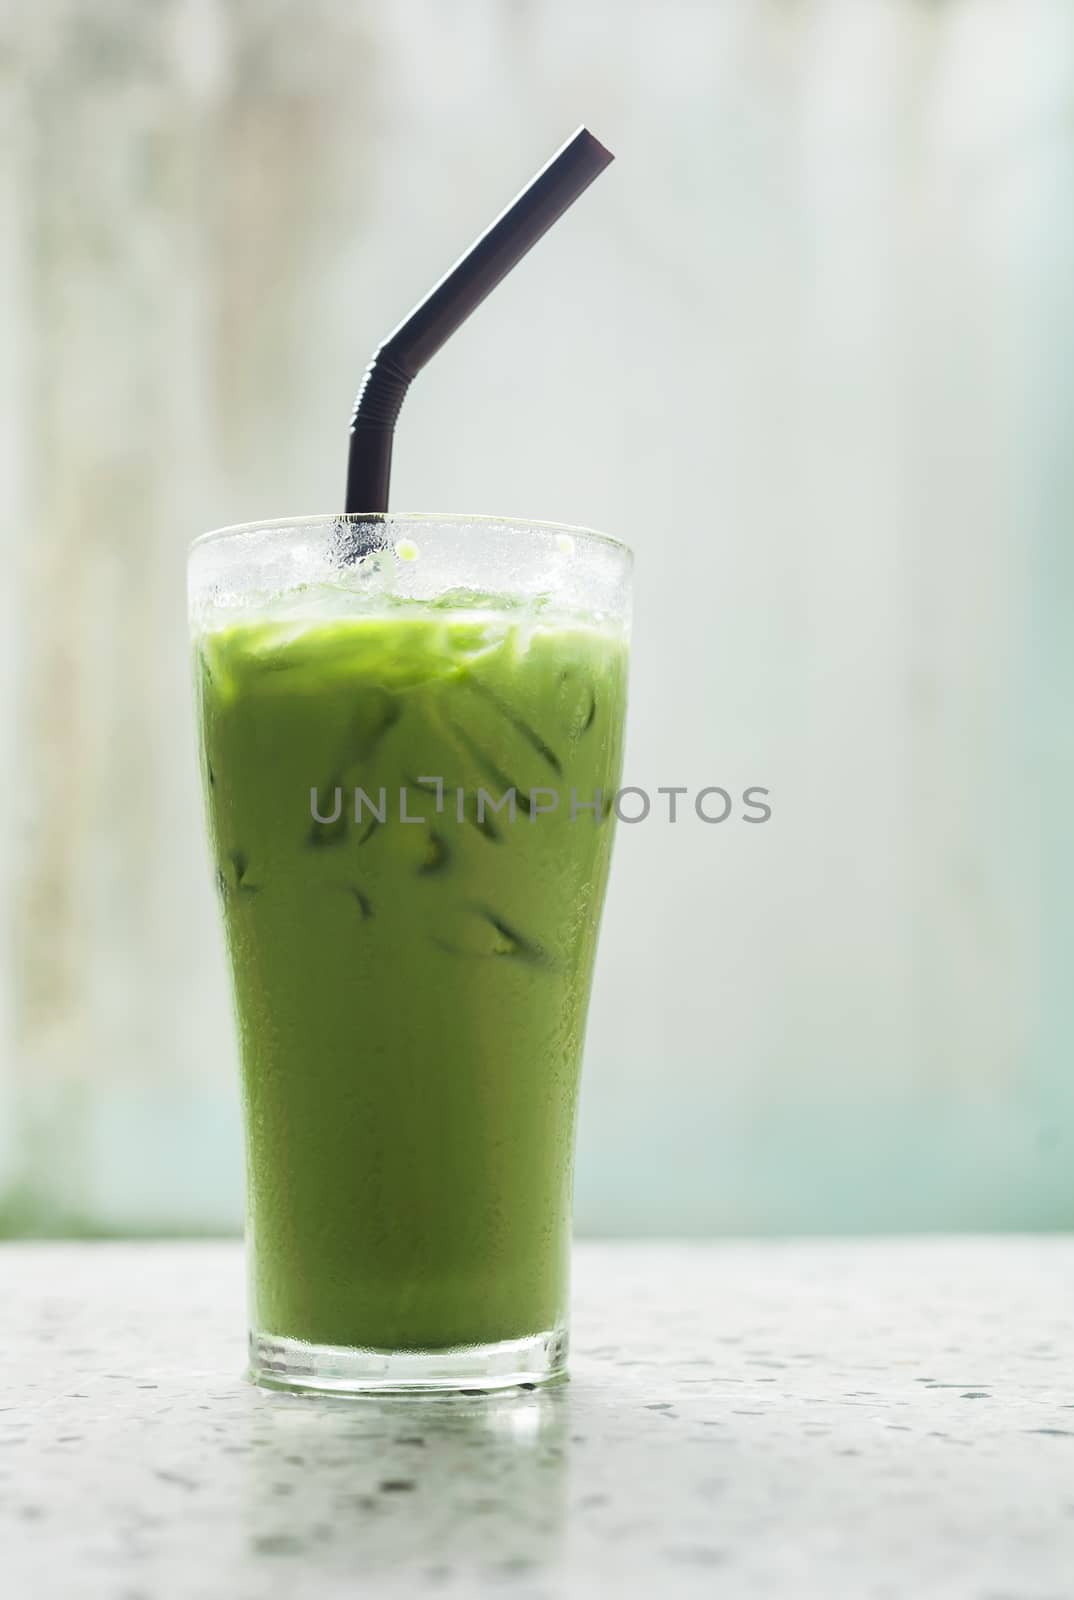 Ice milk green tea, famous drink by jimbophoto